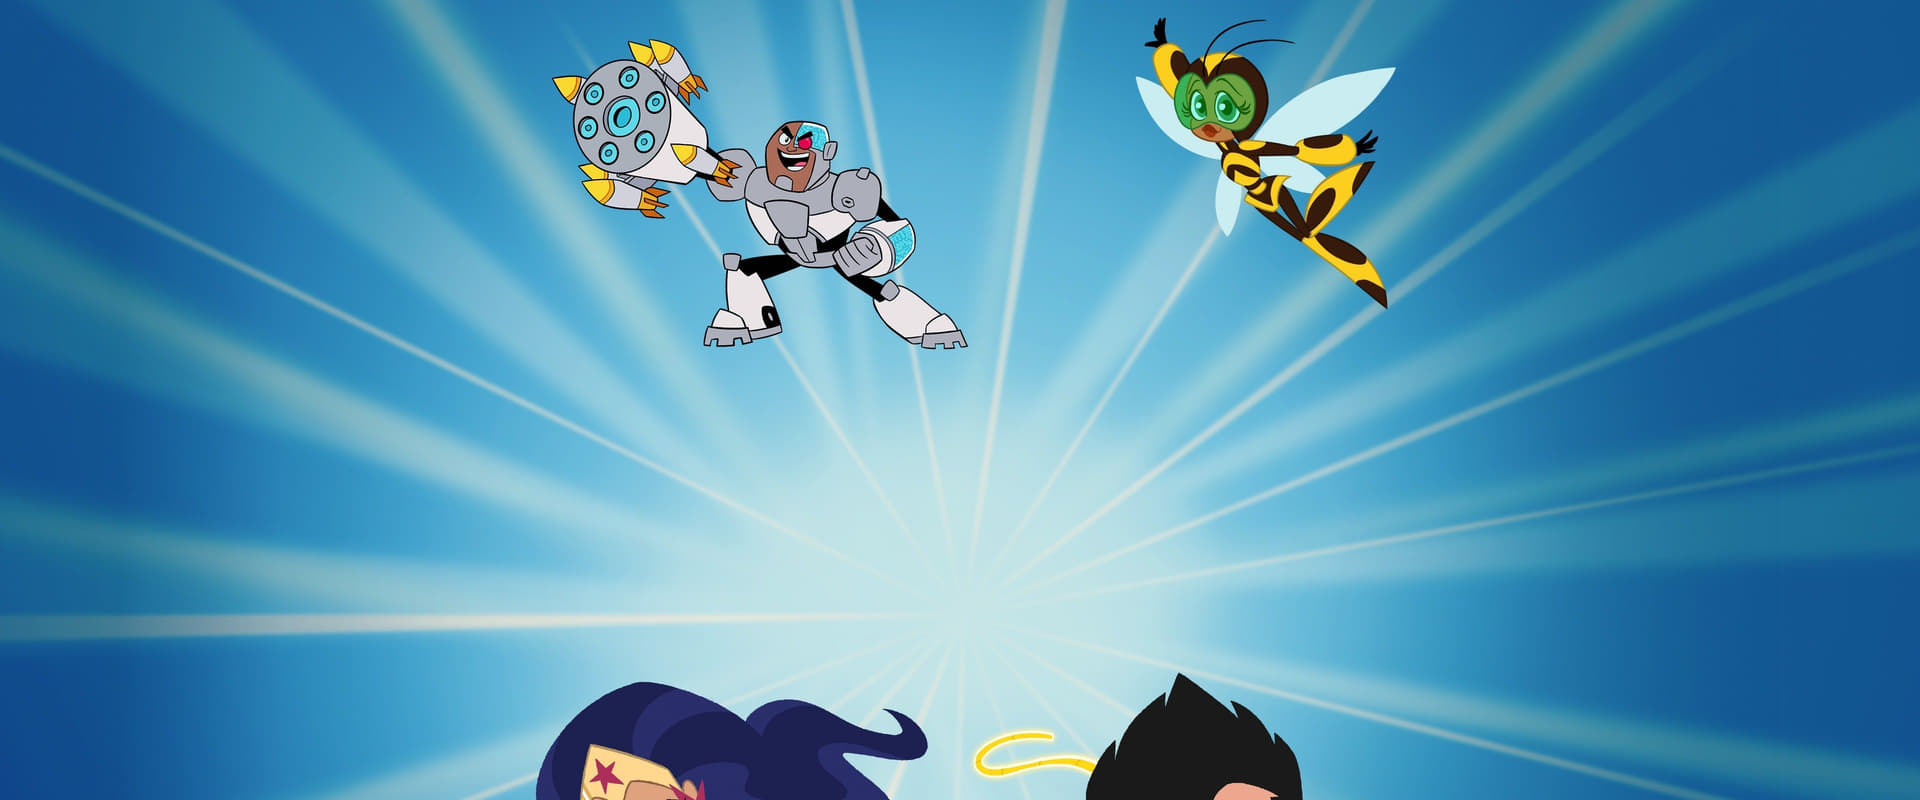 ¡Los Jóvenes Titanes en Acción! y DC Super Hero Girls: Caos en el Multiverso